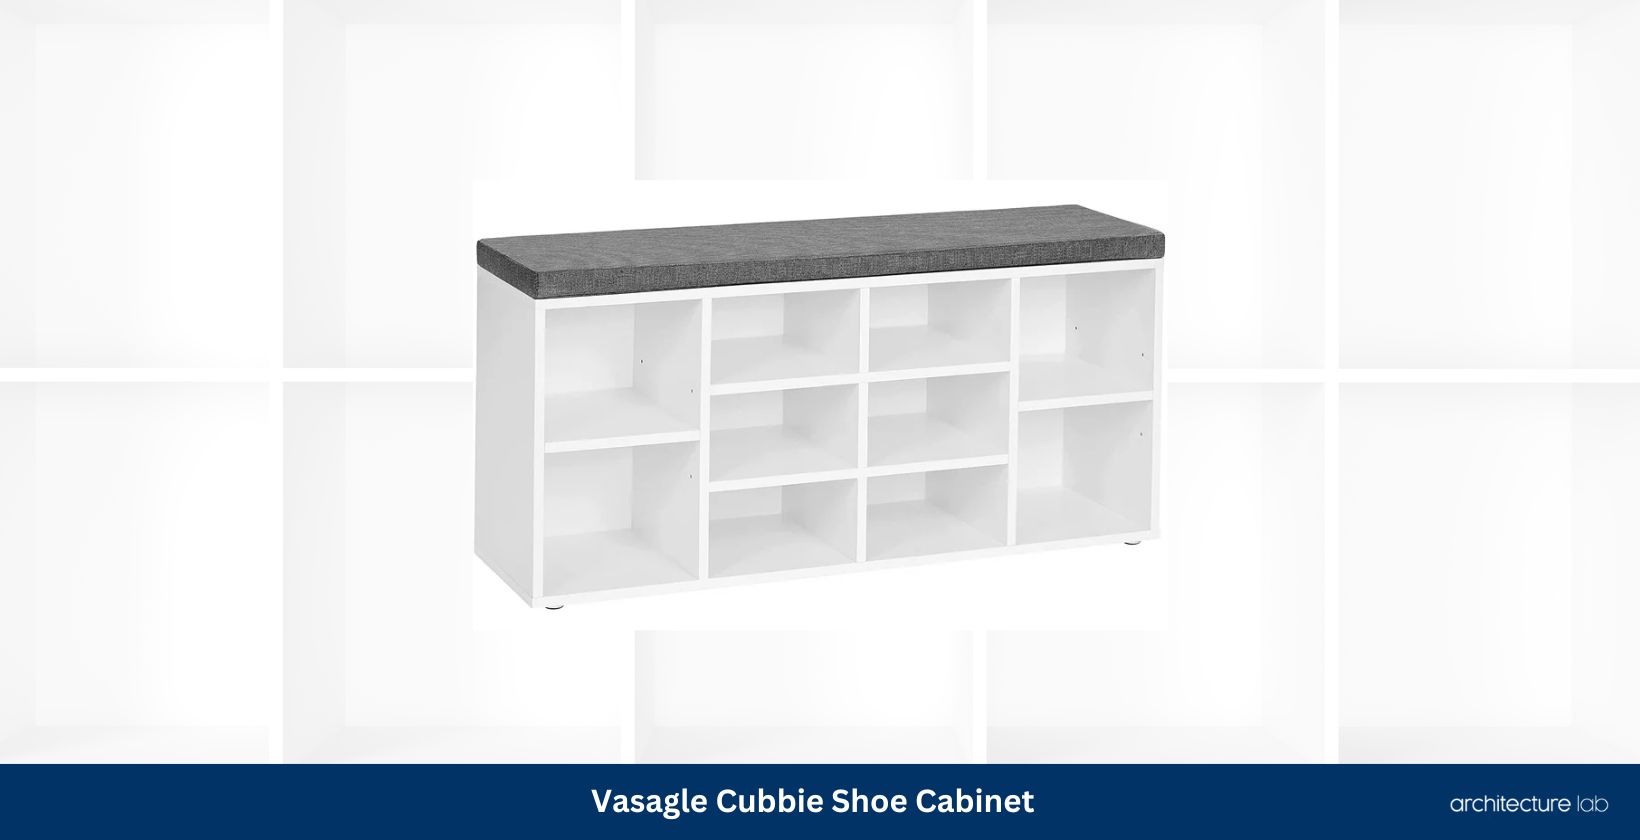 Vasagle cubbie shoe cabinet